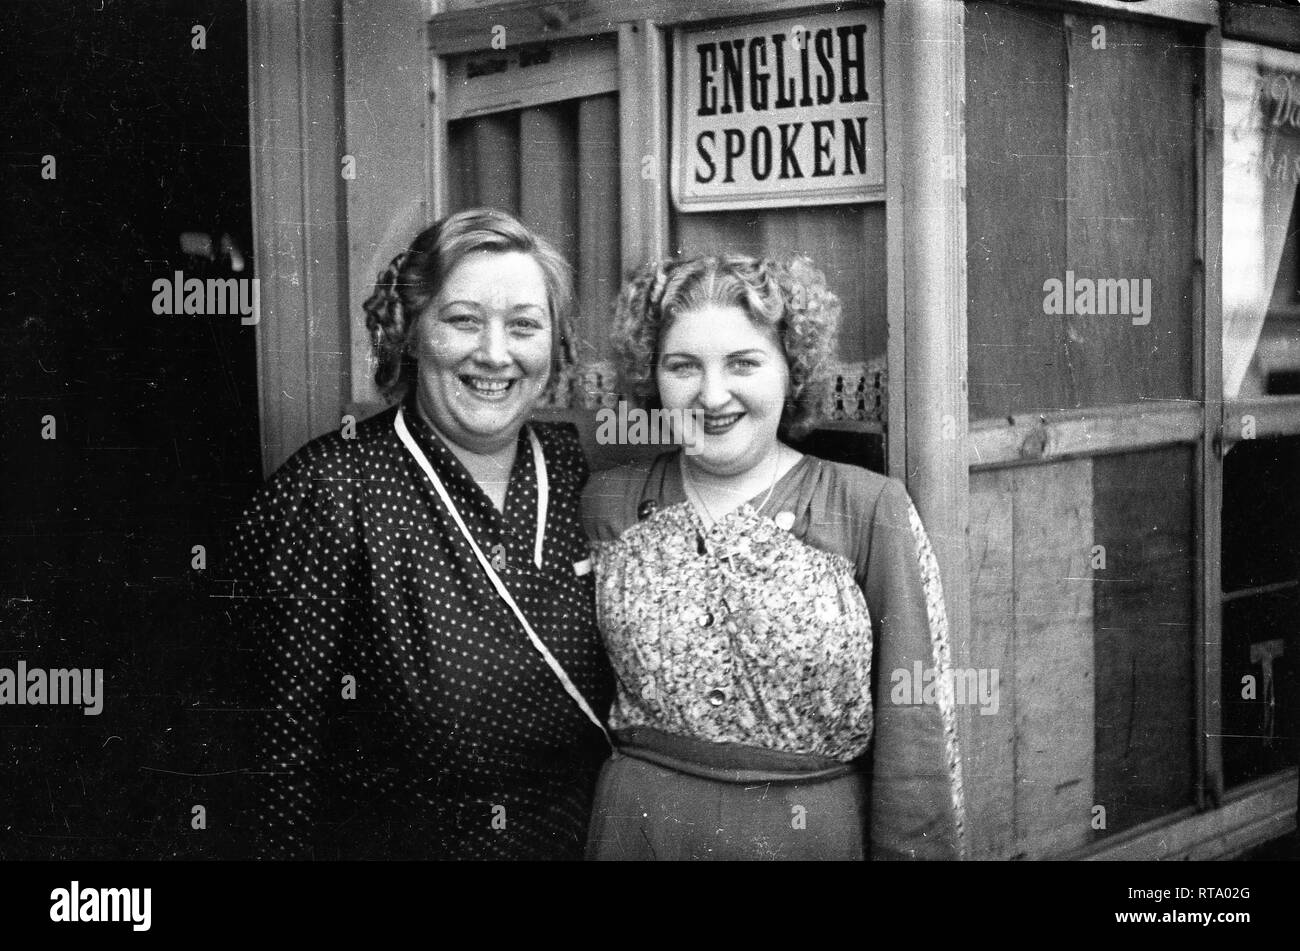 Bar Cafe Besitzer mit Englisch gesprochen, Zeichen auf ihren Cafe in Brüssel Belgien September 1944 Nach der Befreiung von den Deutschen während des WW2 Stockfoto